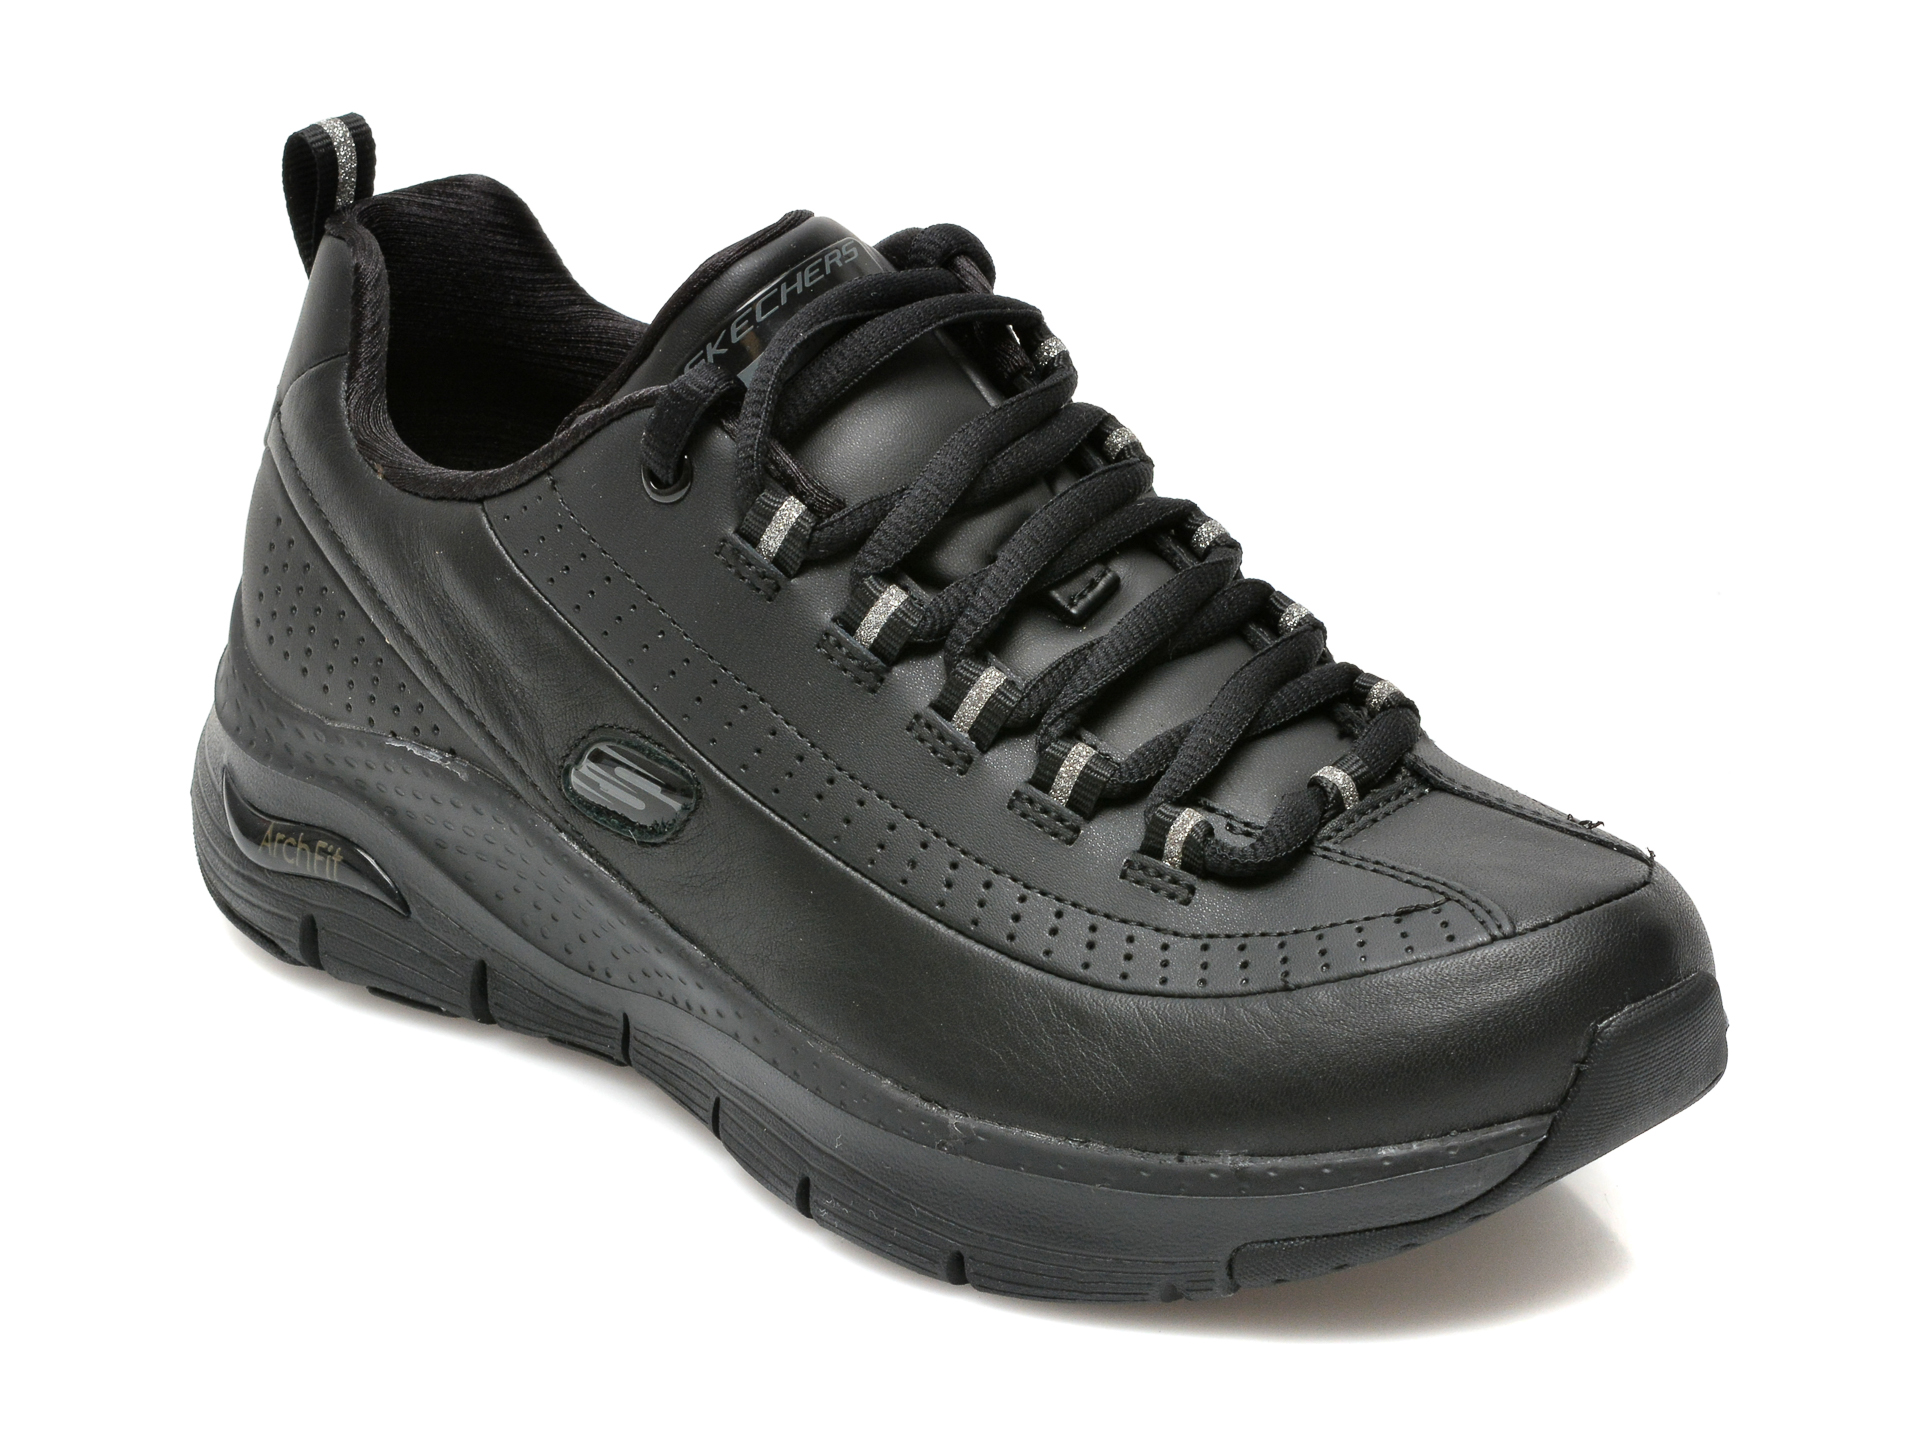 Pantofi SKECHERS negri, ARCH FIT, din piele naturala Skechers imagine reduceri